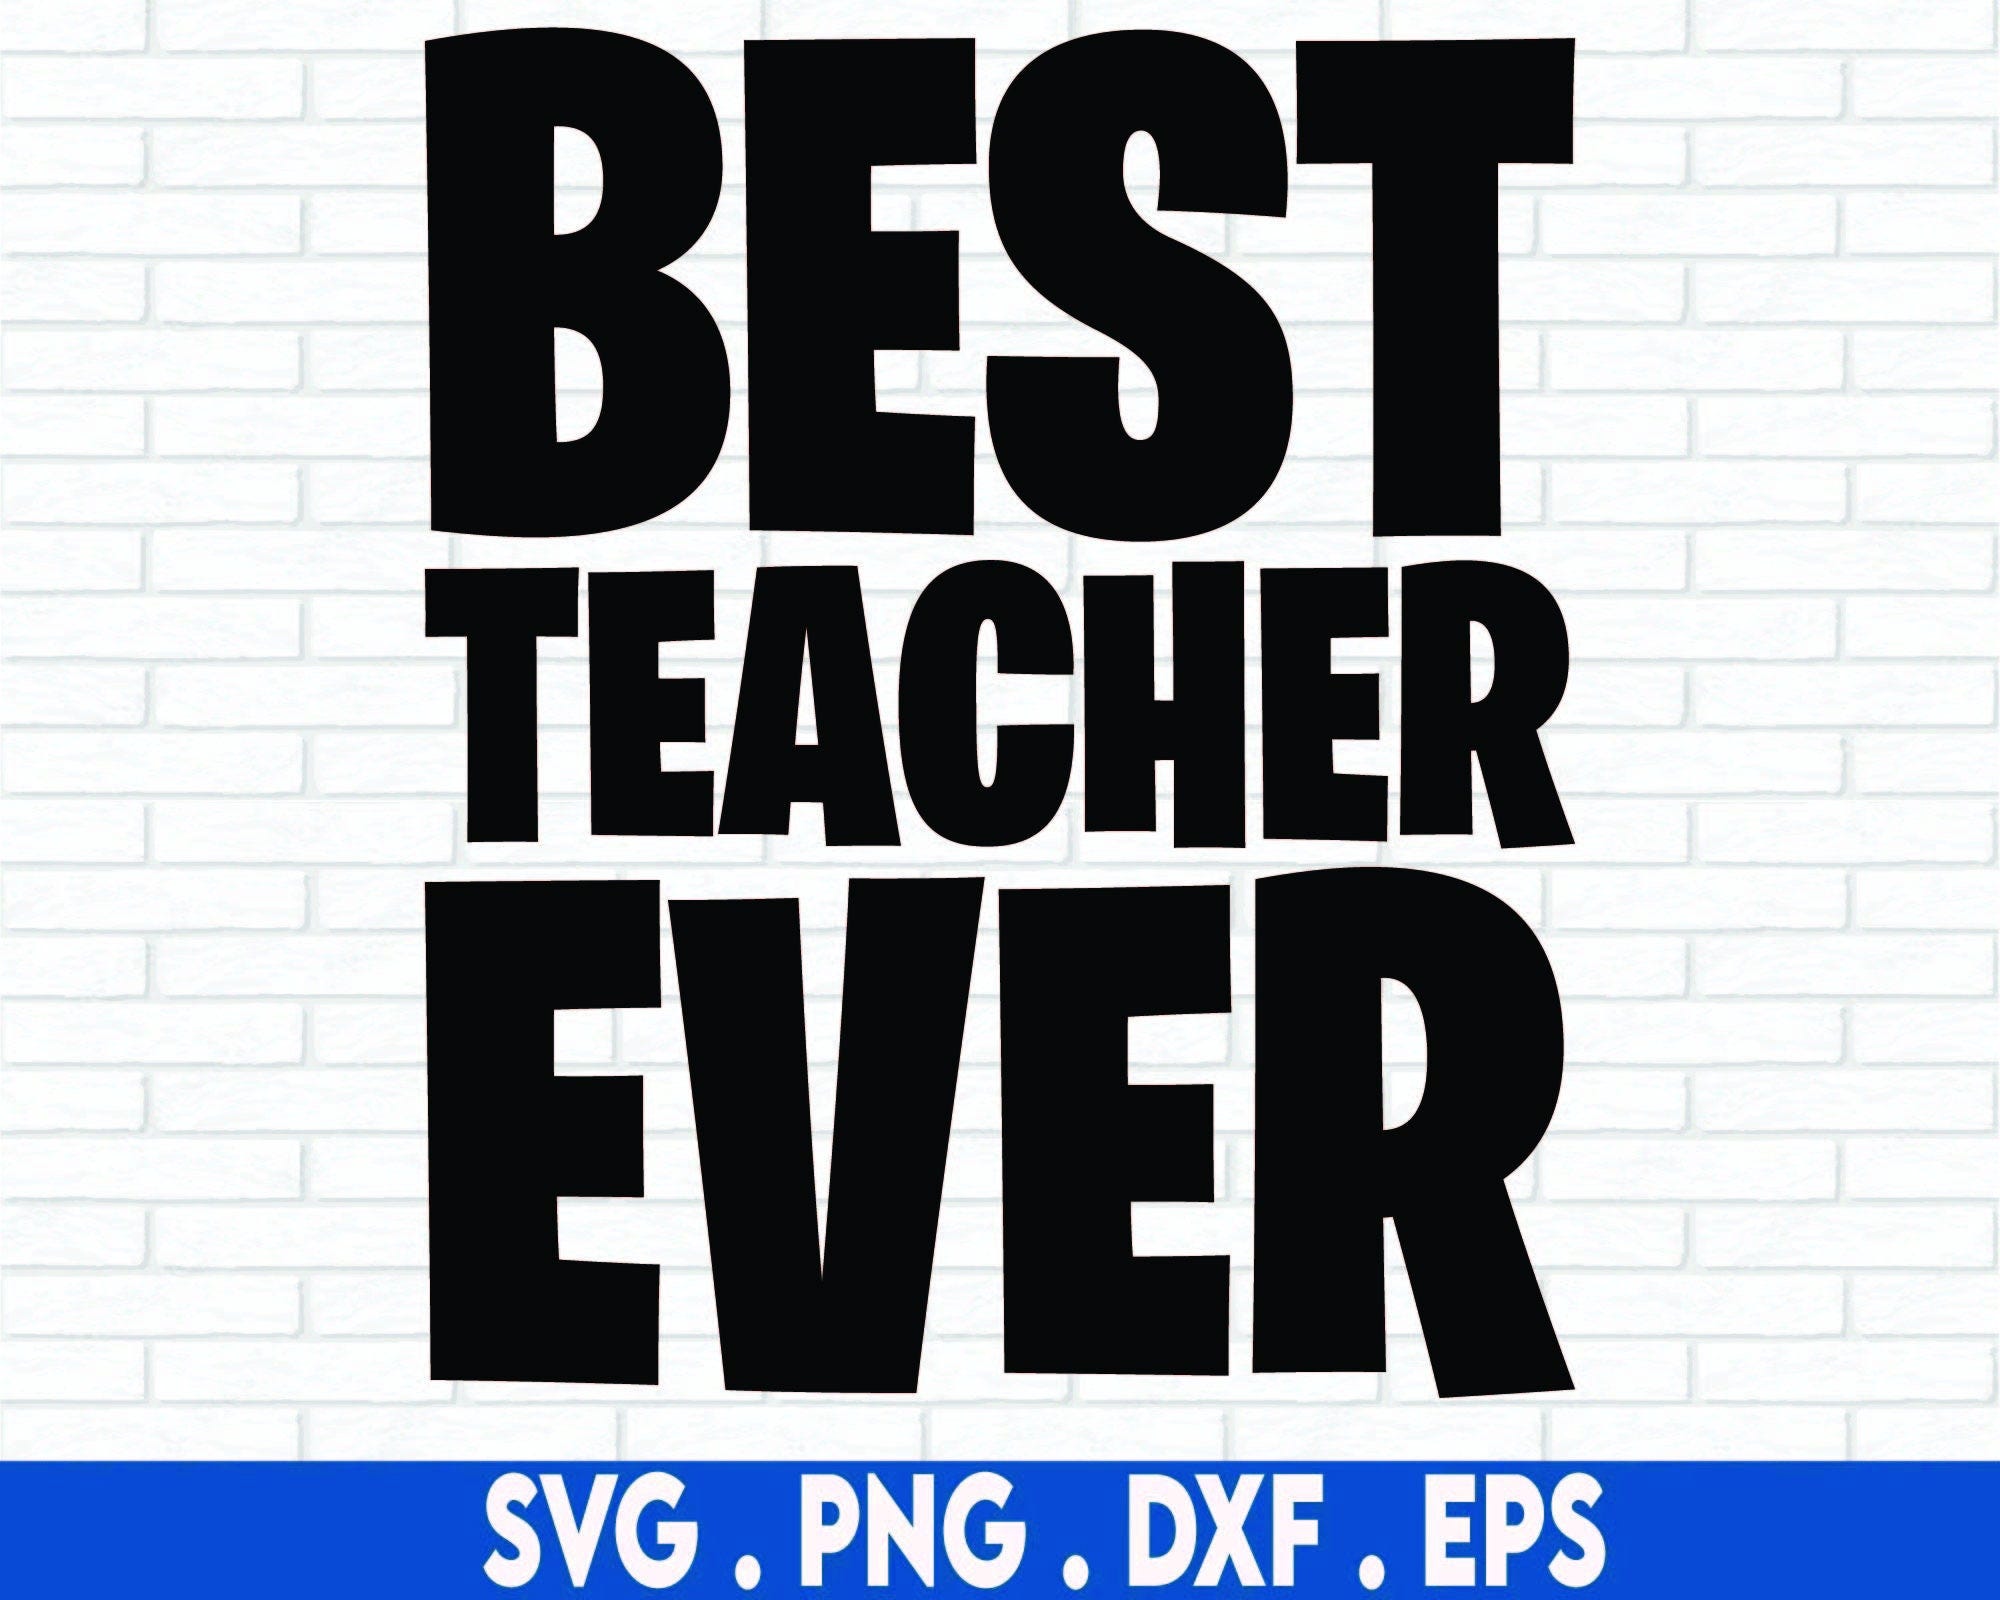 Best Teacher Ever SVG Cut File, great cut file for a teacher, teacher svg, teacher gift svg, teaching svg, handlettered svg, dxf